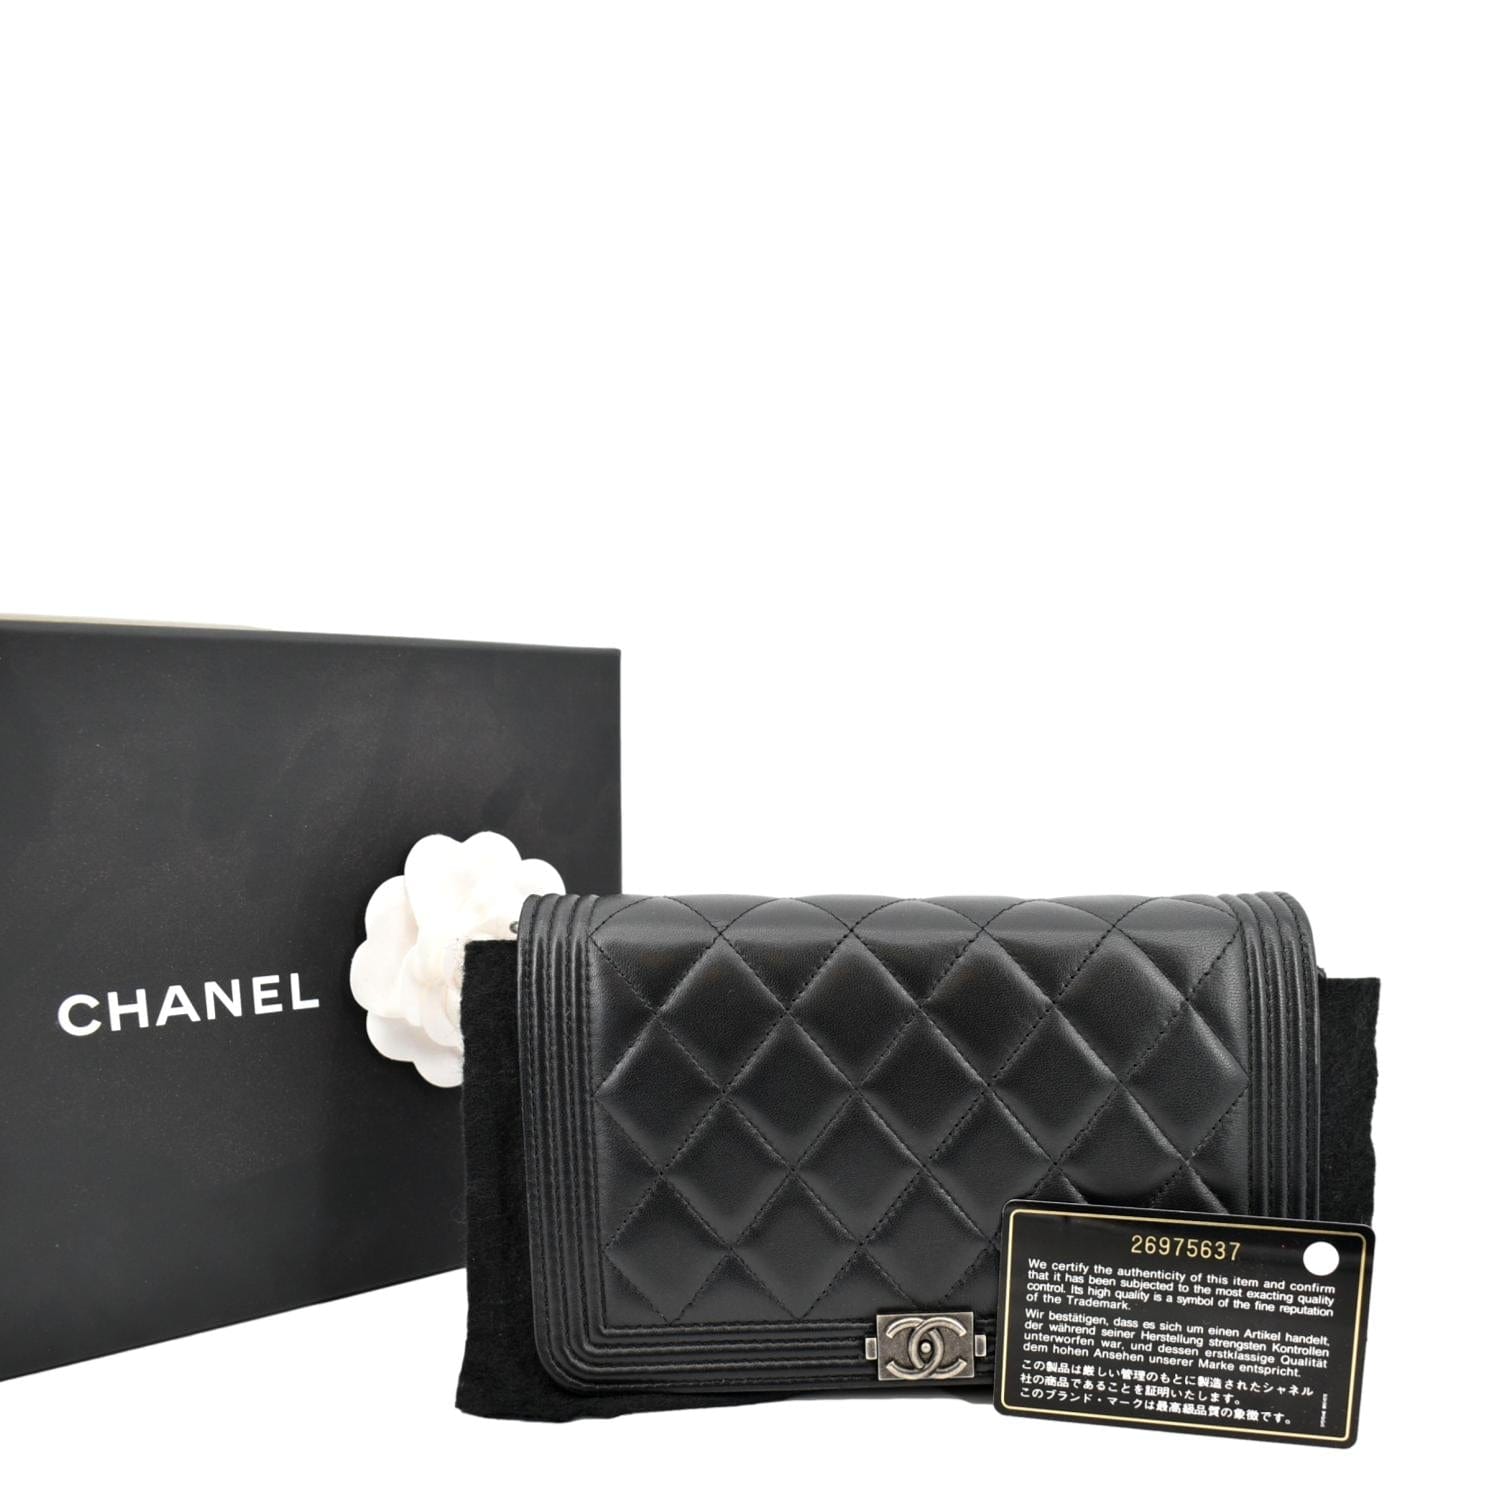 Chanel Boy Woc Lambskin Leather Clutch Bag